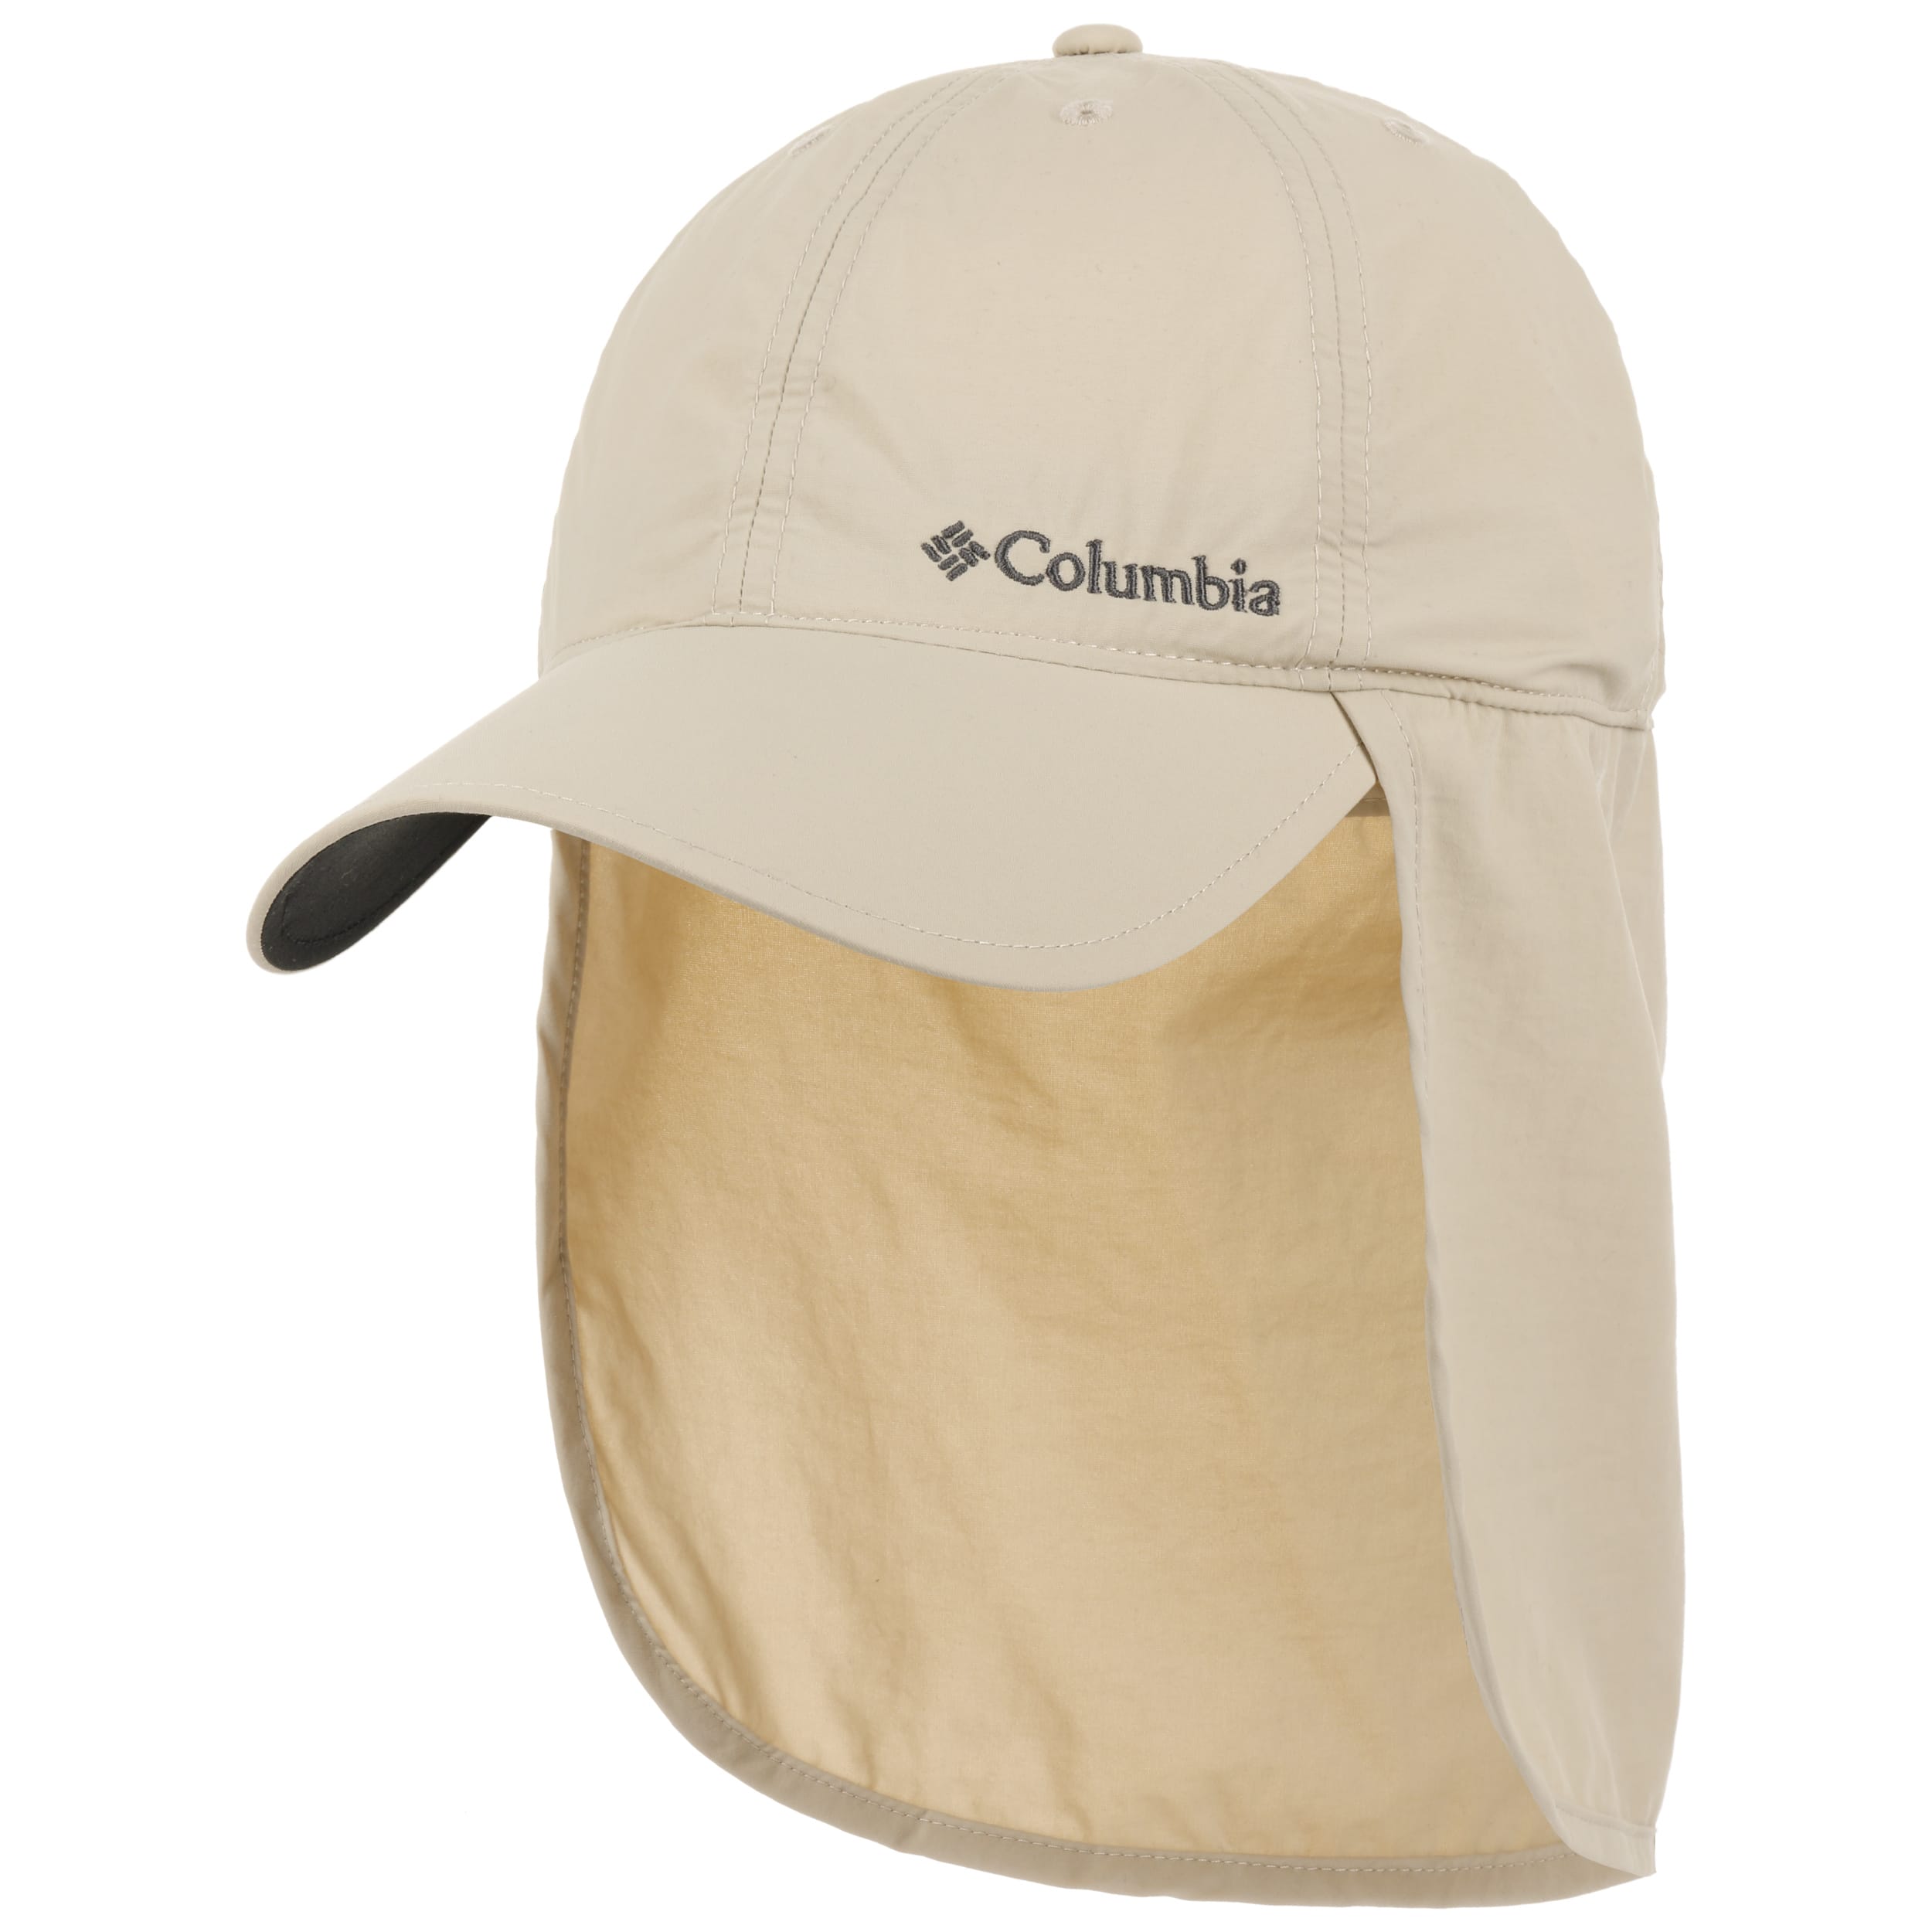 https://img.hatshopping.com/Schooner-Cap-with-Neck-Protection-by-Columbia-beige.62374_rf15.jpg